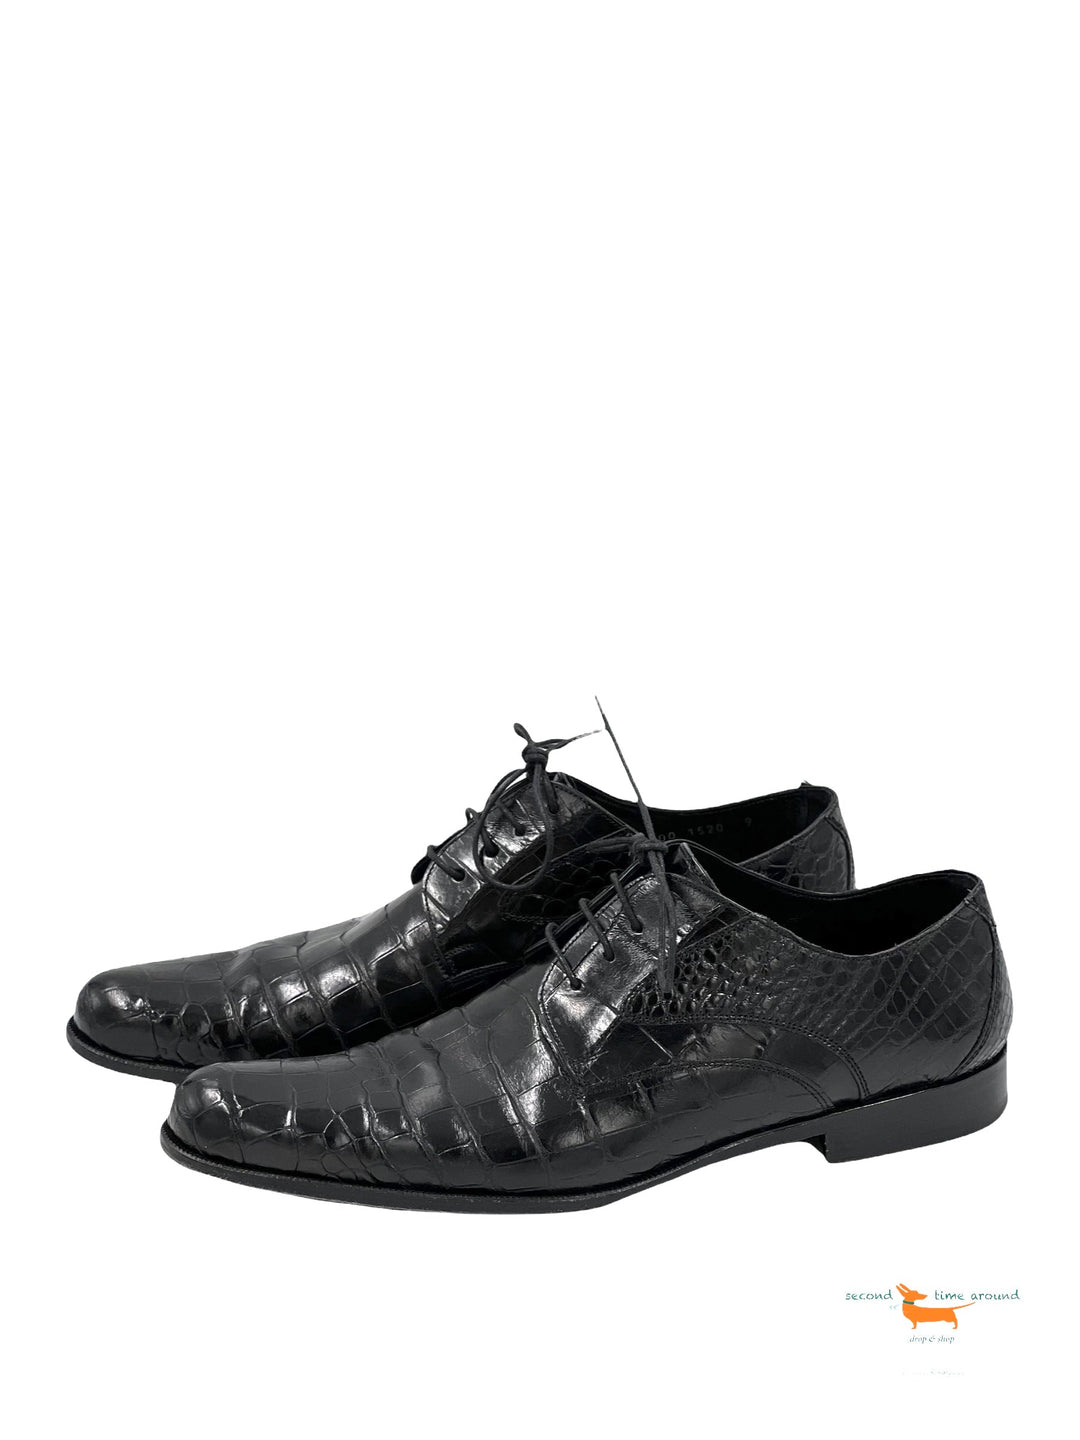 Dolce & Gabbana Crocodile Shoes